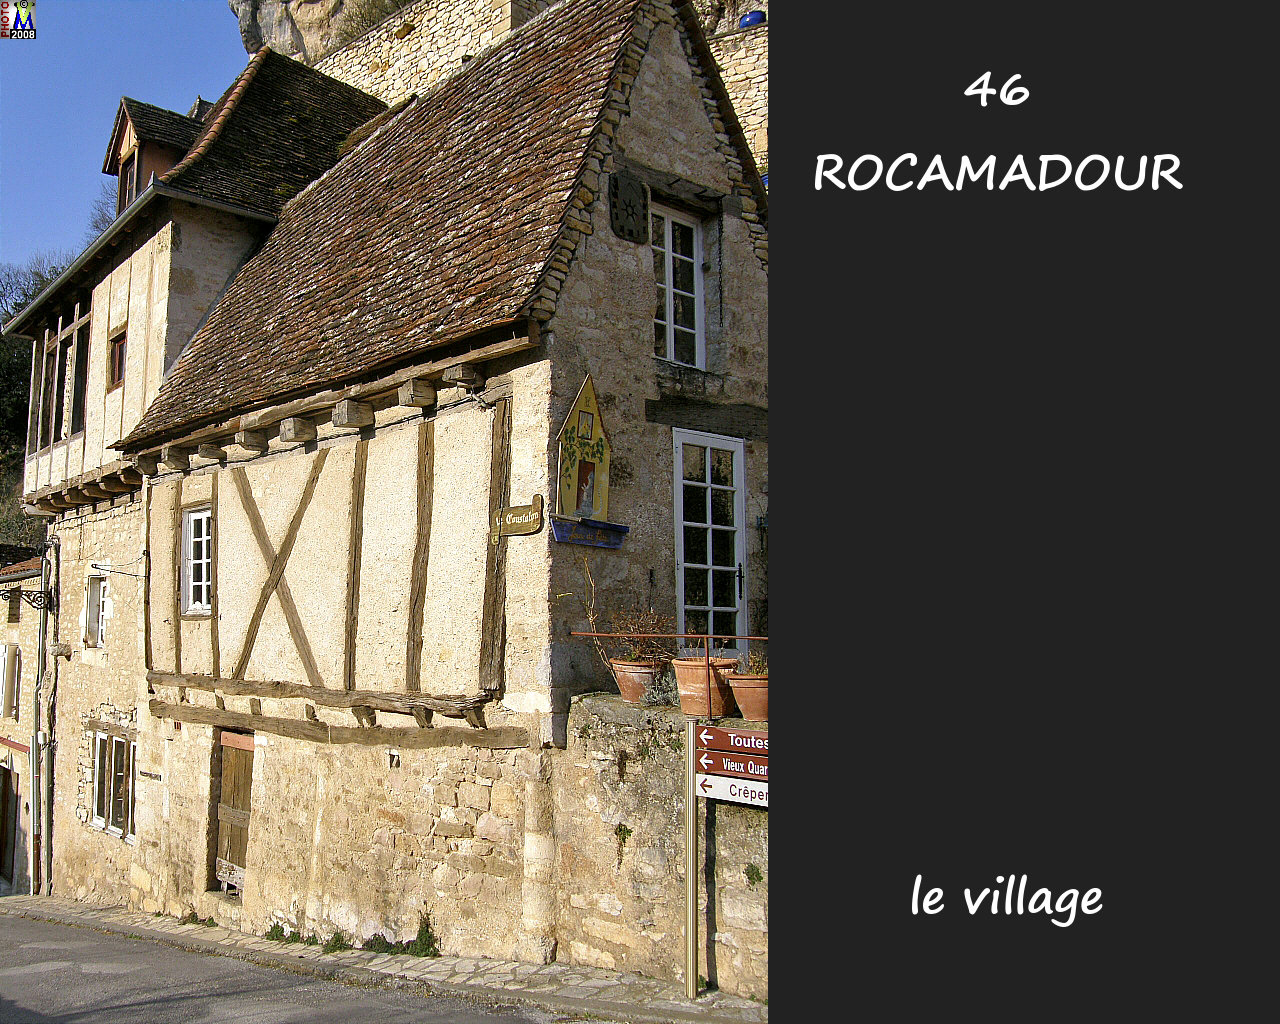 46ROCAMADOUR_village_128.jpg